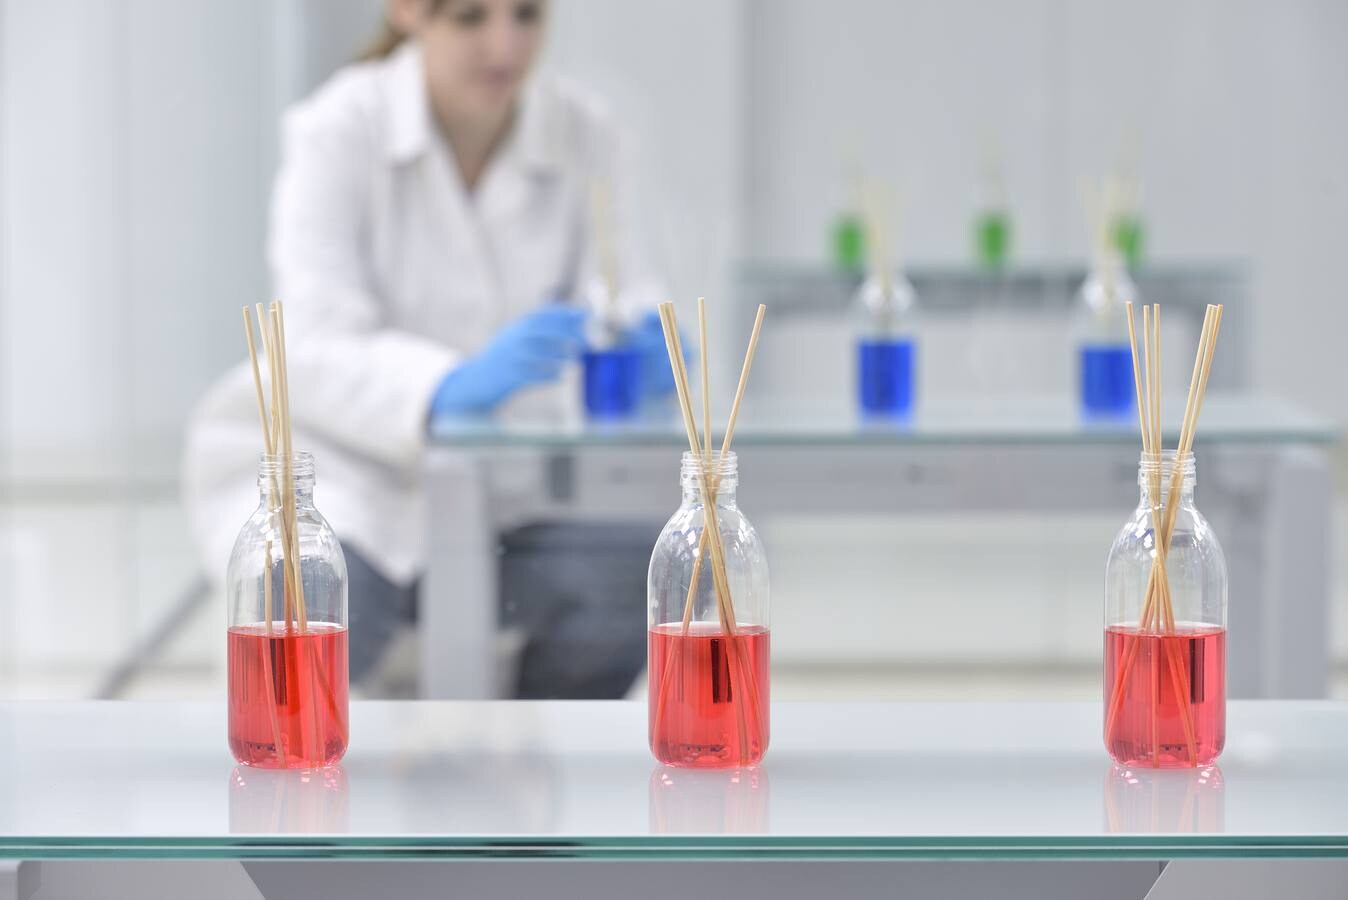 Templo del olor: Los laboratorios españoles crean las fórmulas de algunos de los perfumes más usados en el mundo. Combinan miles de fragancias naturales y sintéticas para dar en la diana